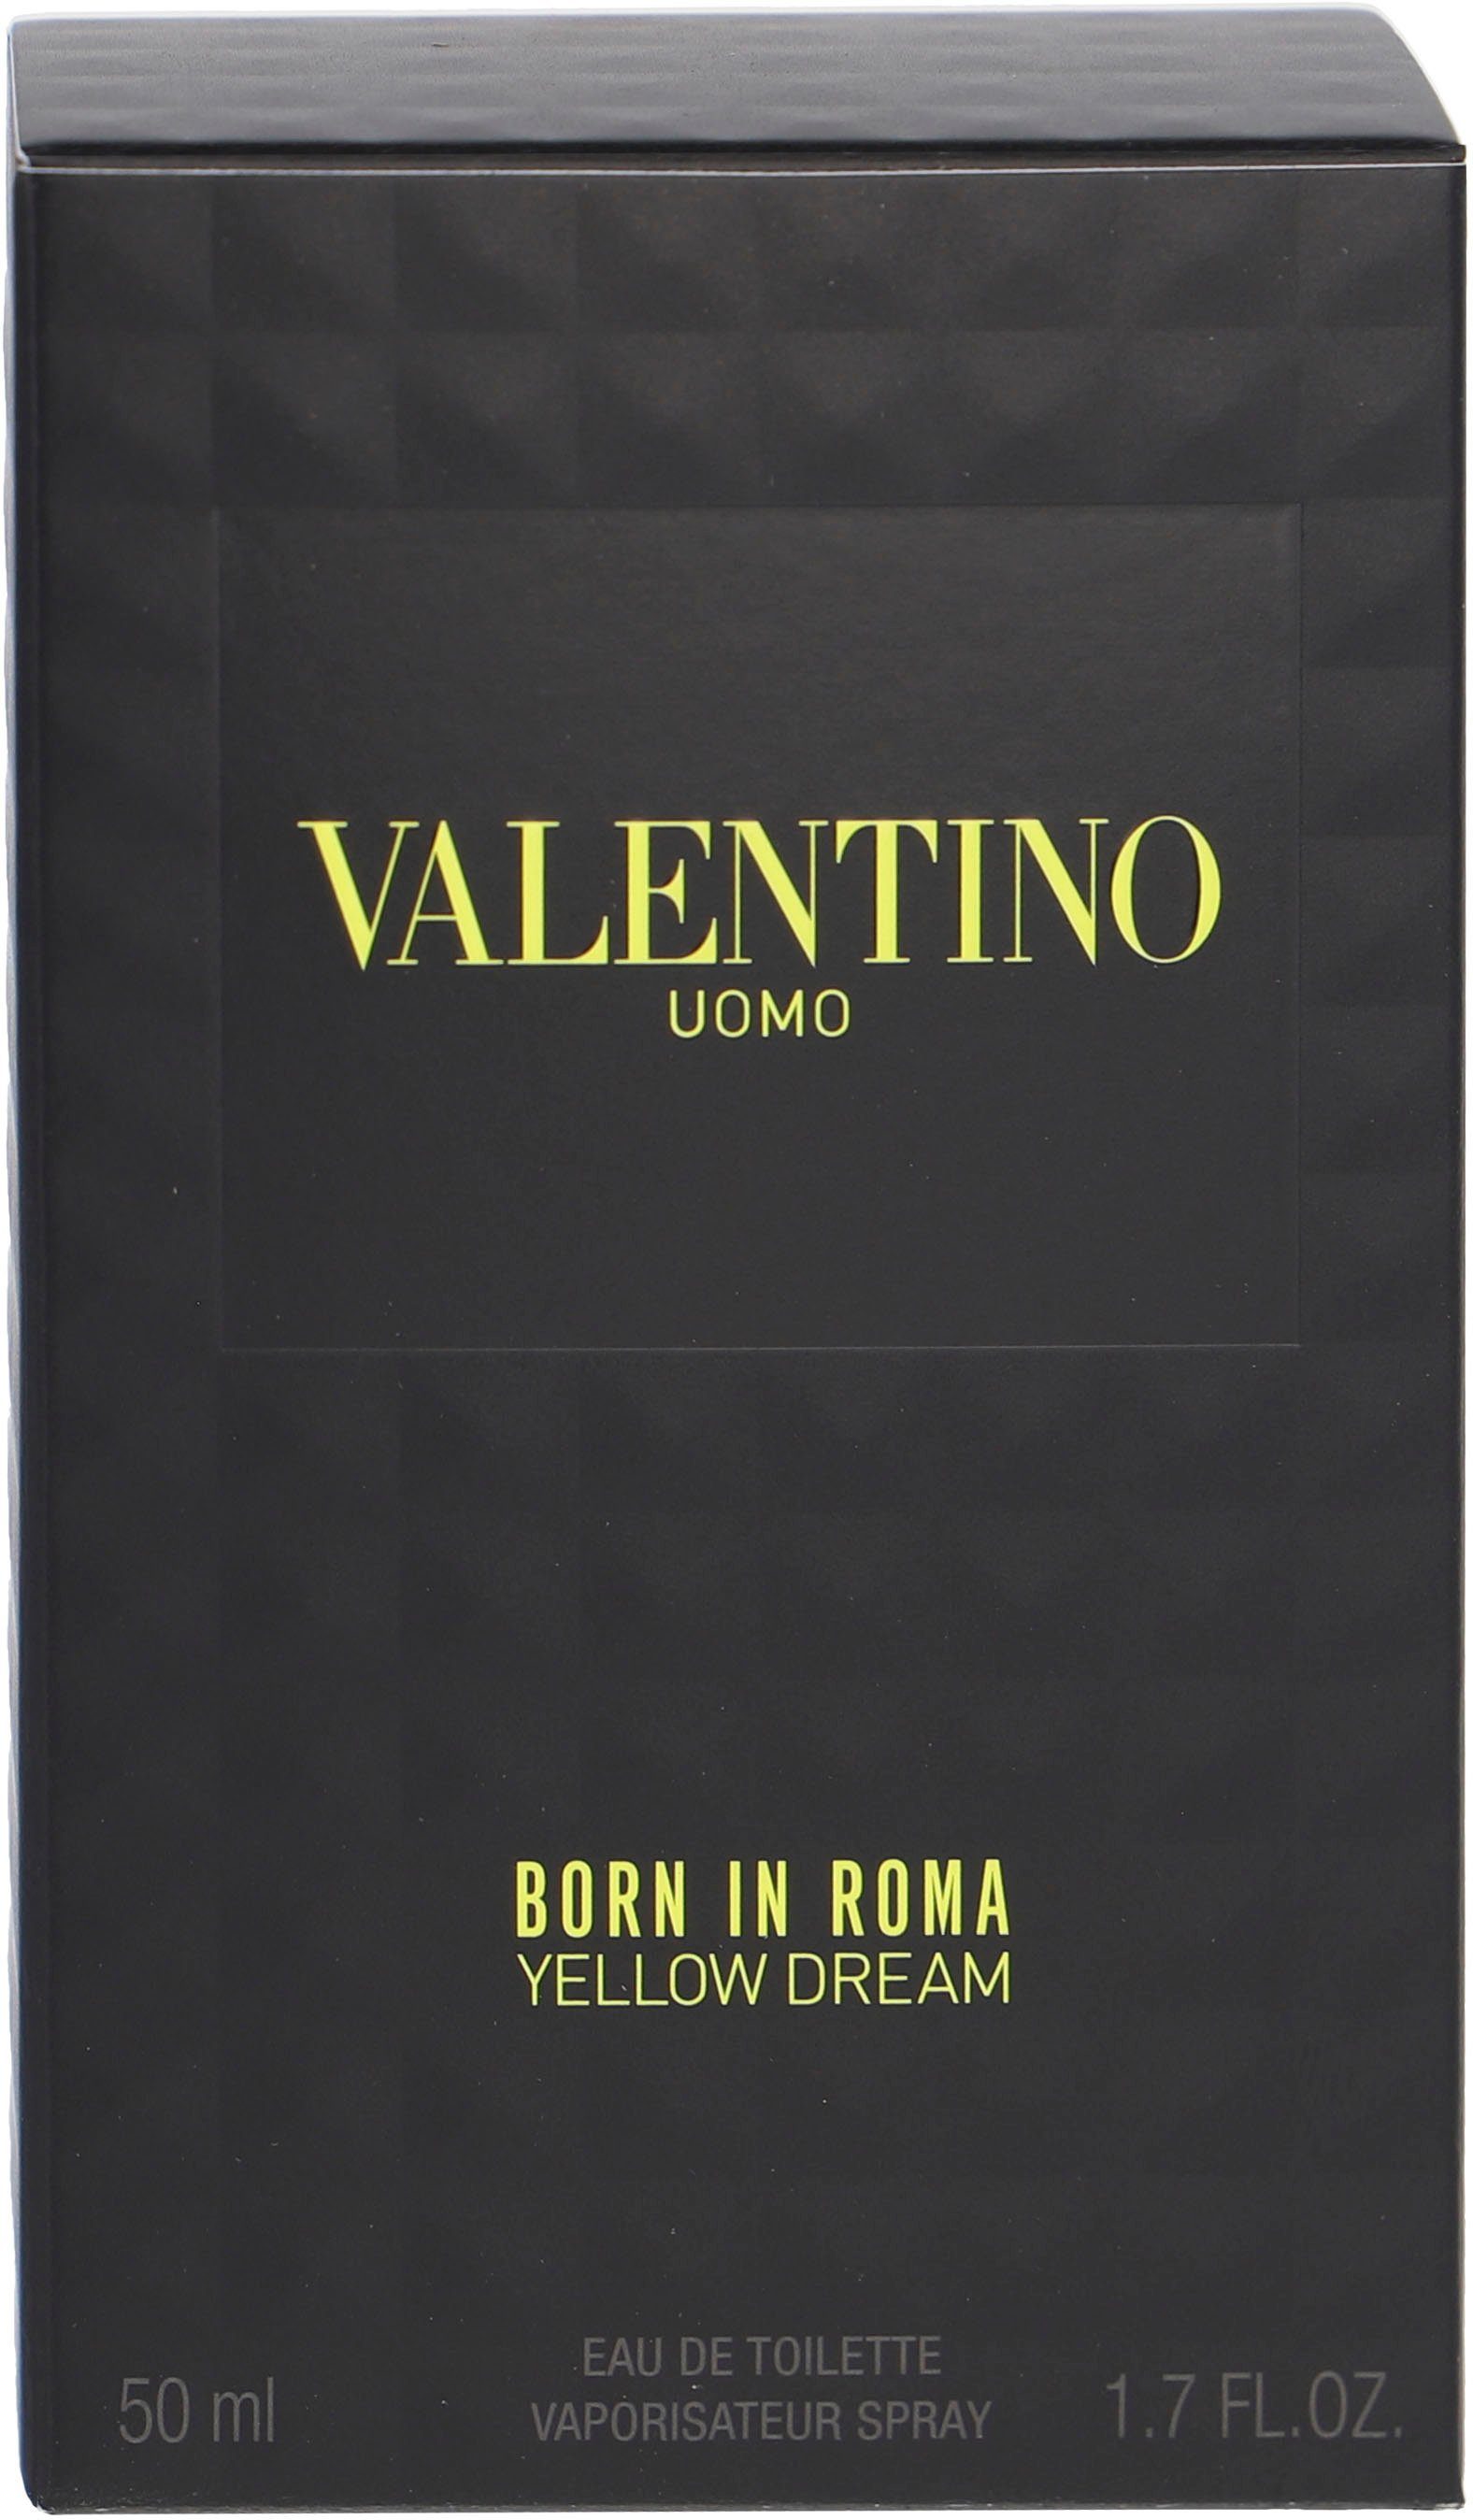 Valentino Eau de Toilette Roma Yellow Born Uomo In Dream